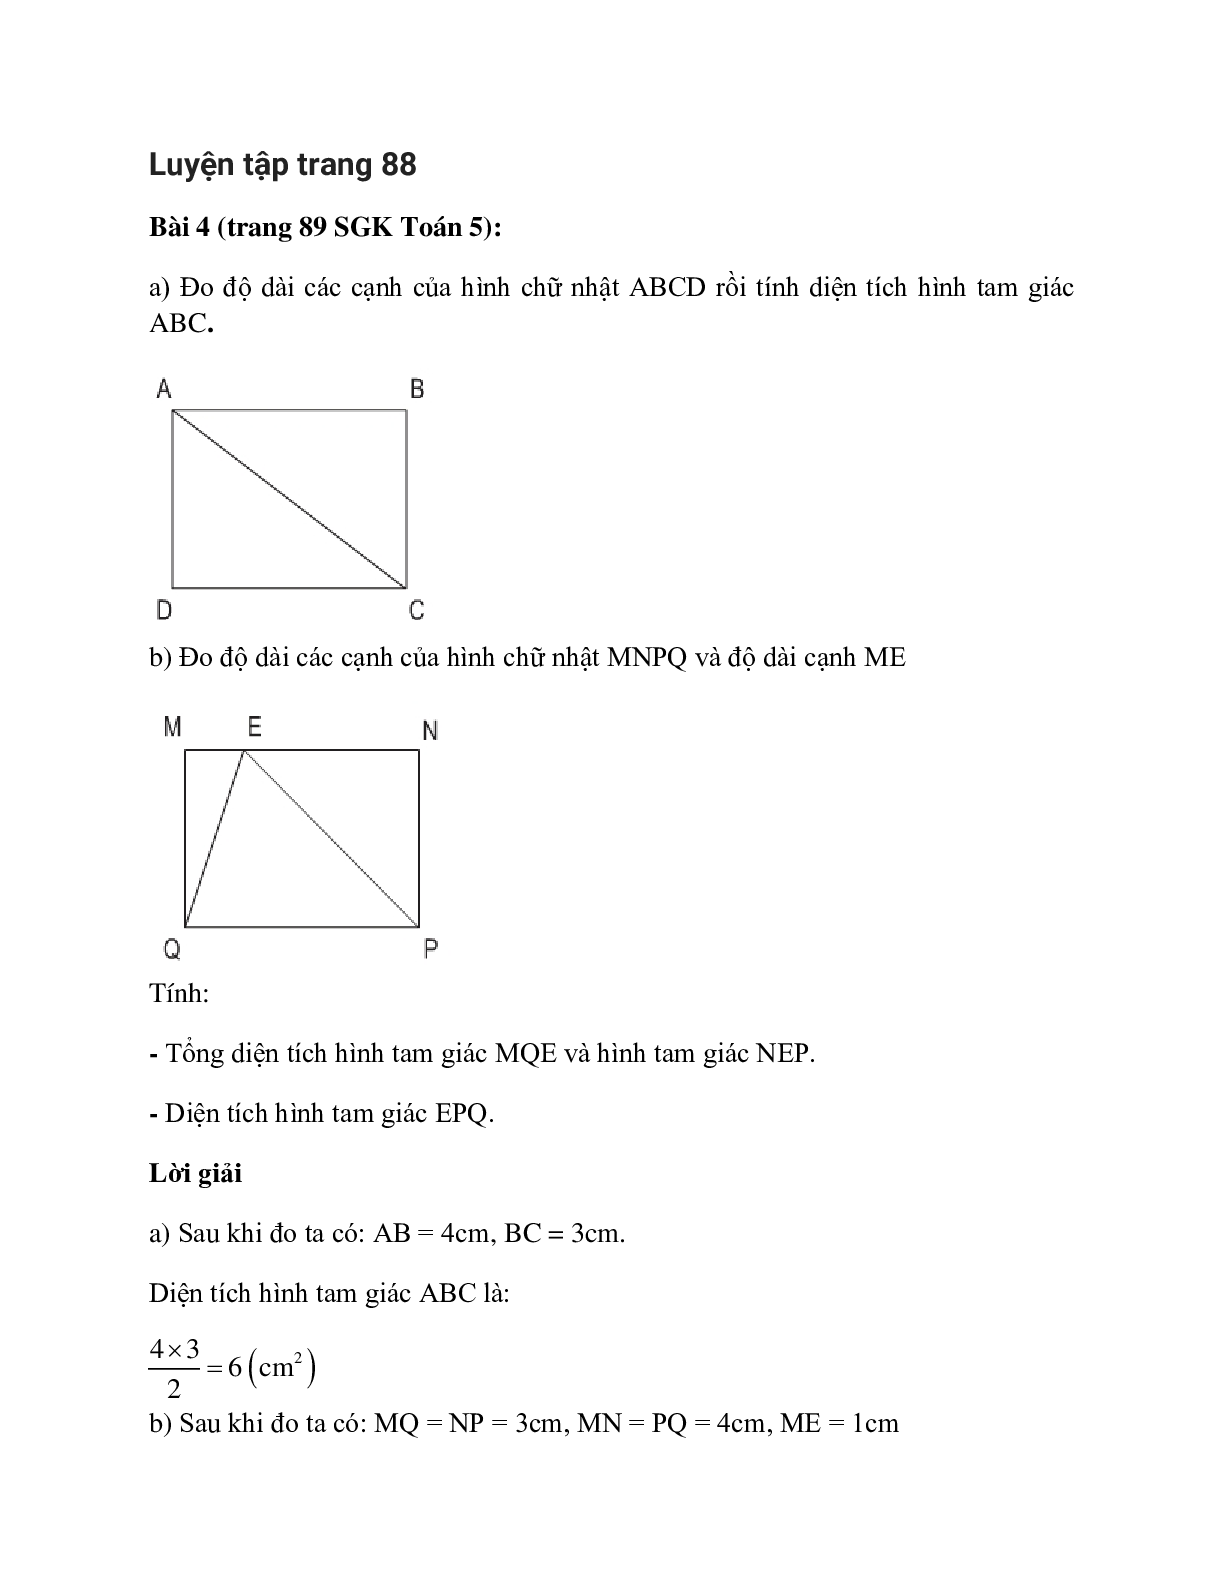 Đo độ dài các cạnh của hình chữ nhật ABCD rồi tính diện tích hình tam giác ABC (trang 1)